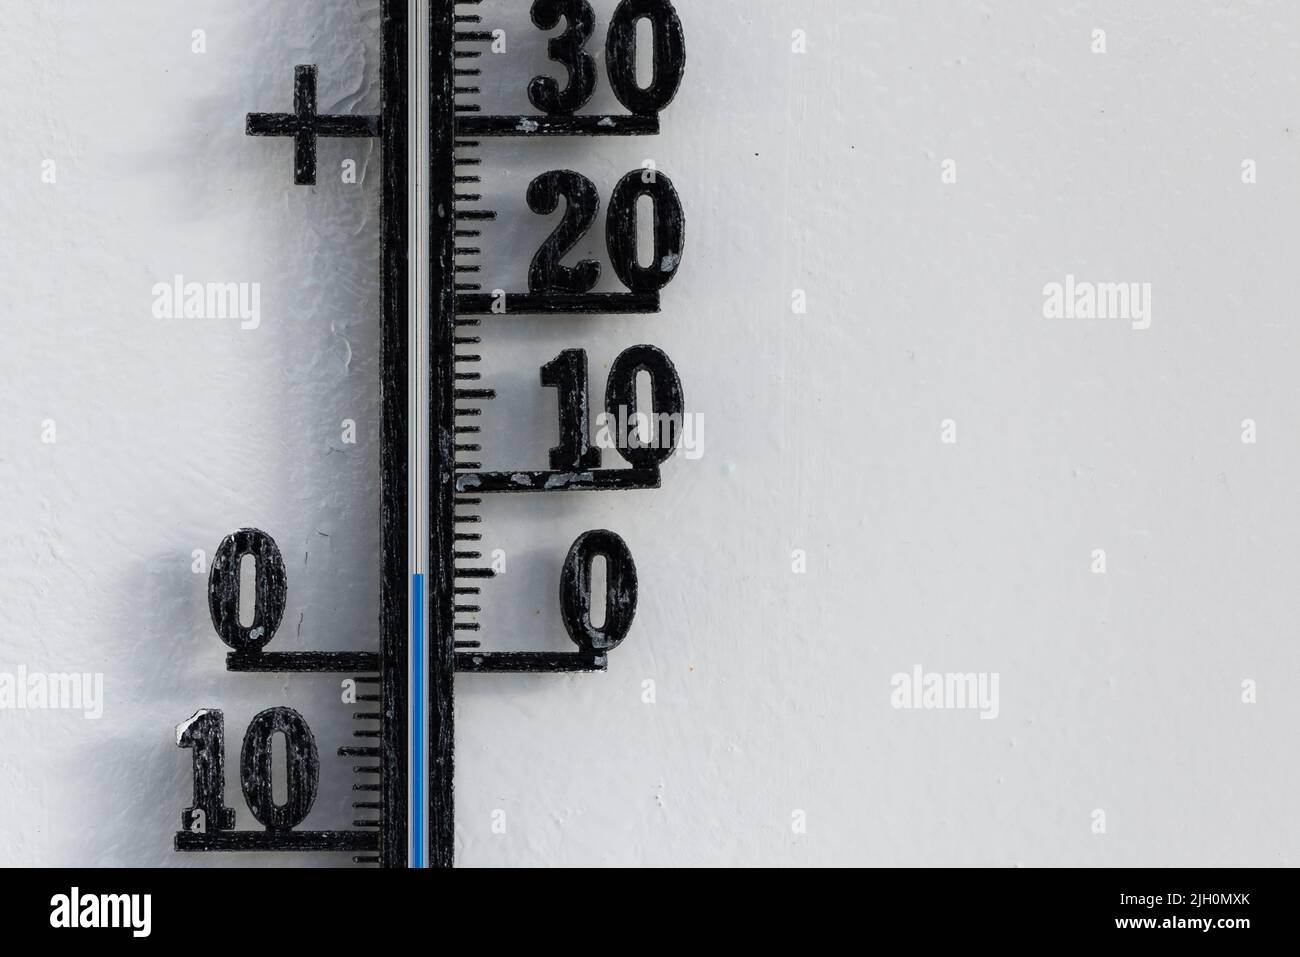 Termómetro analógico negro clásico colgado en una pared blanca que muestra una escala de temperatura azul de cinco, 5 grados centígrados Foto de stock